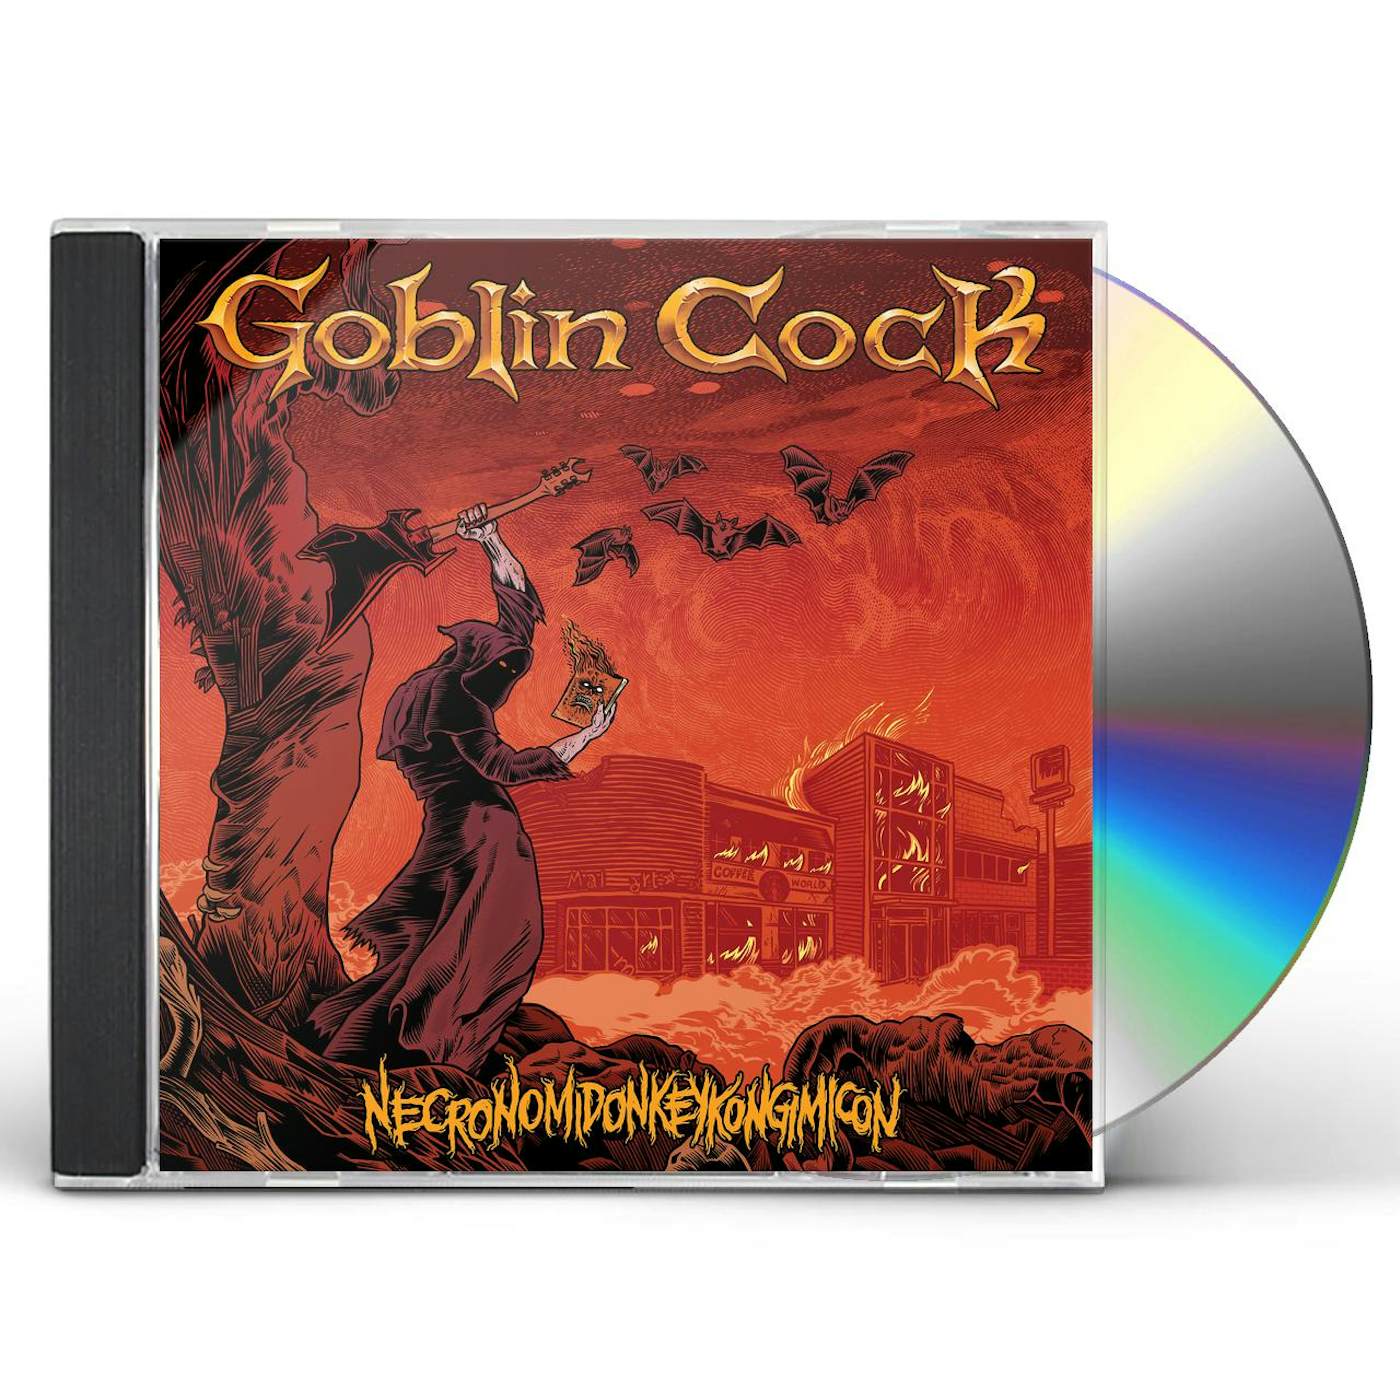 Goblin Cock NECRONOMIDONKEYKONGIMICON CD